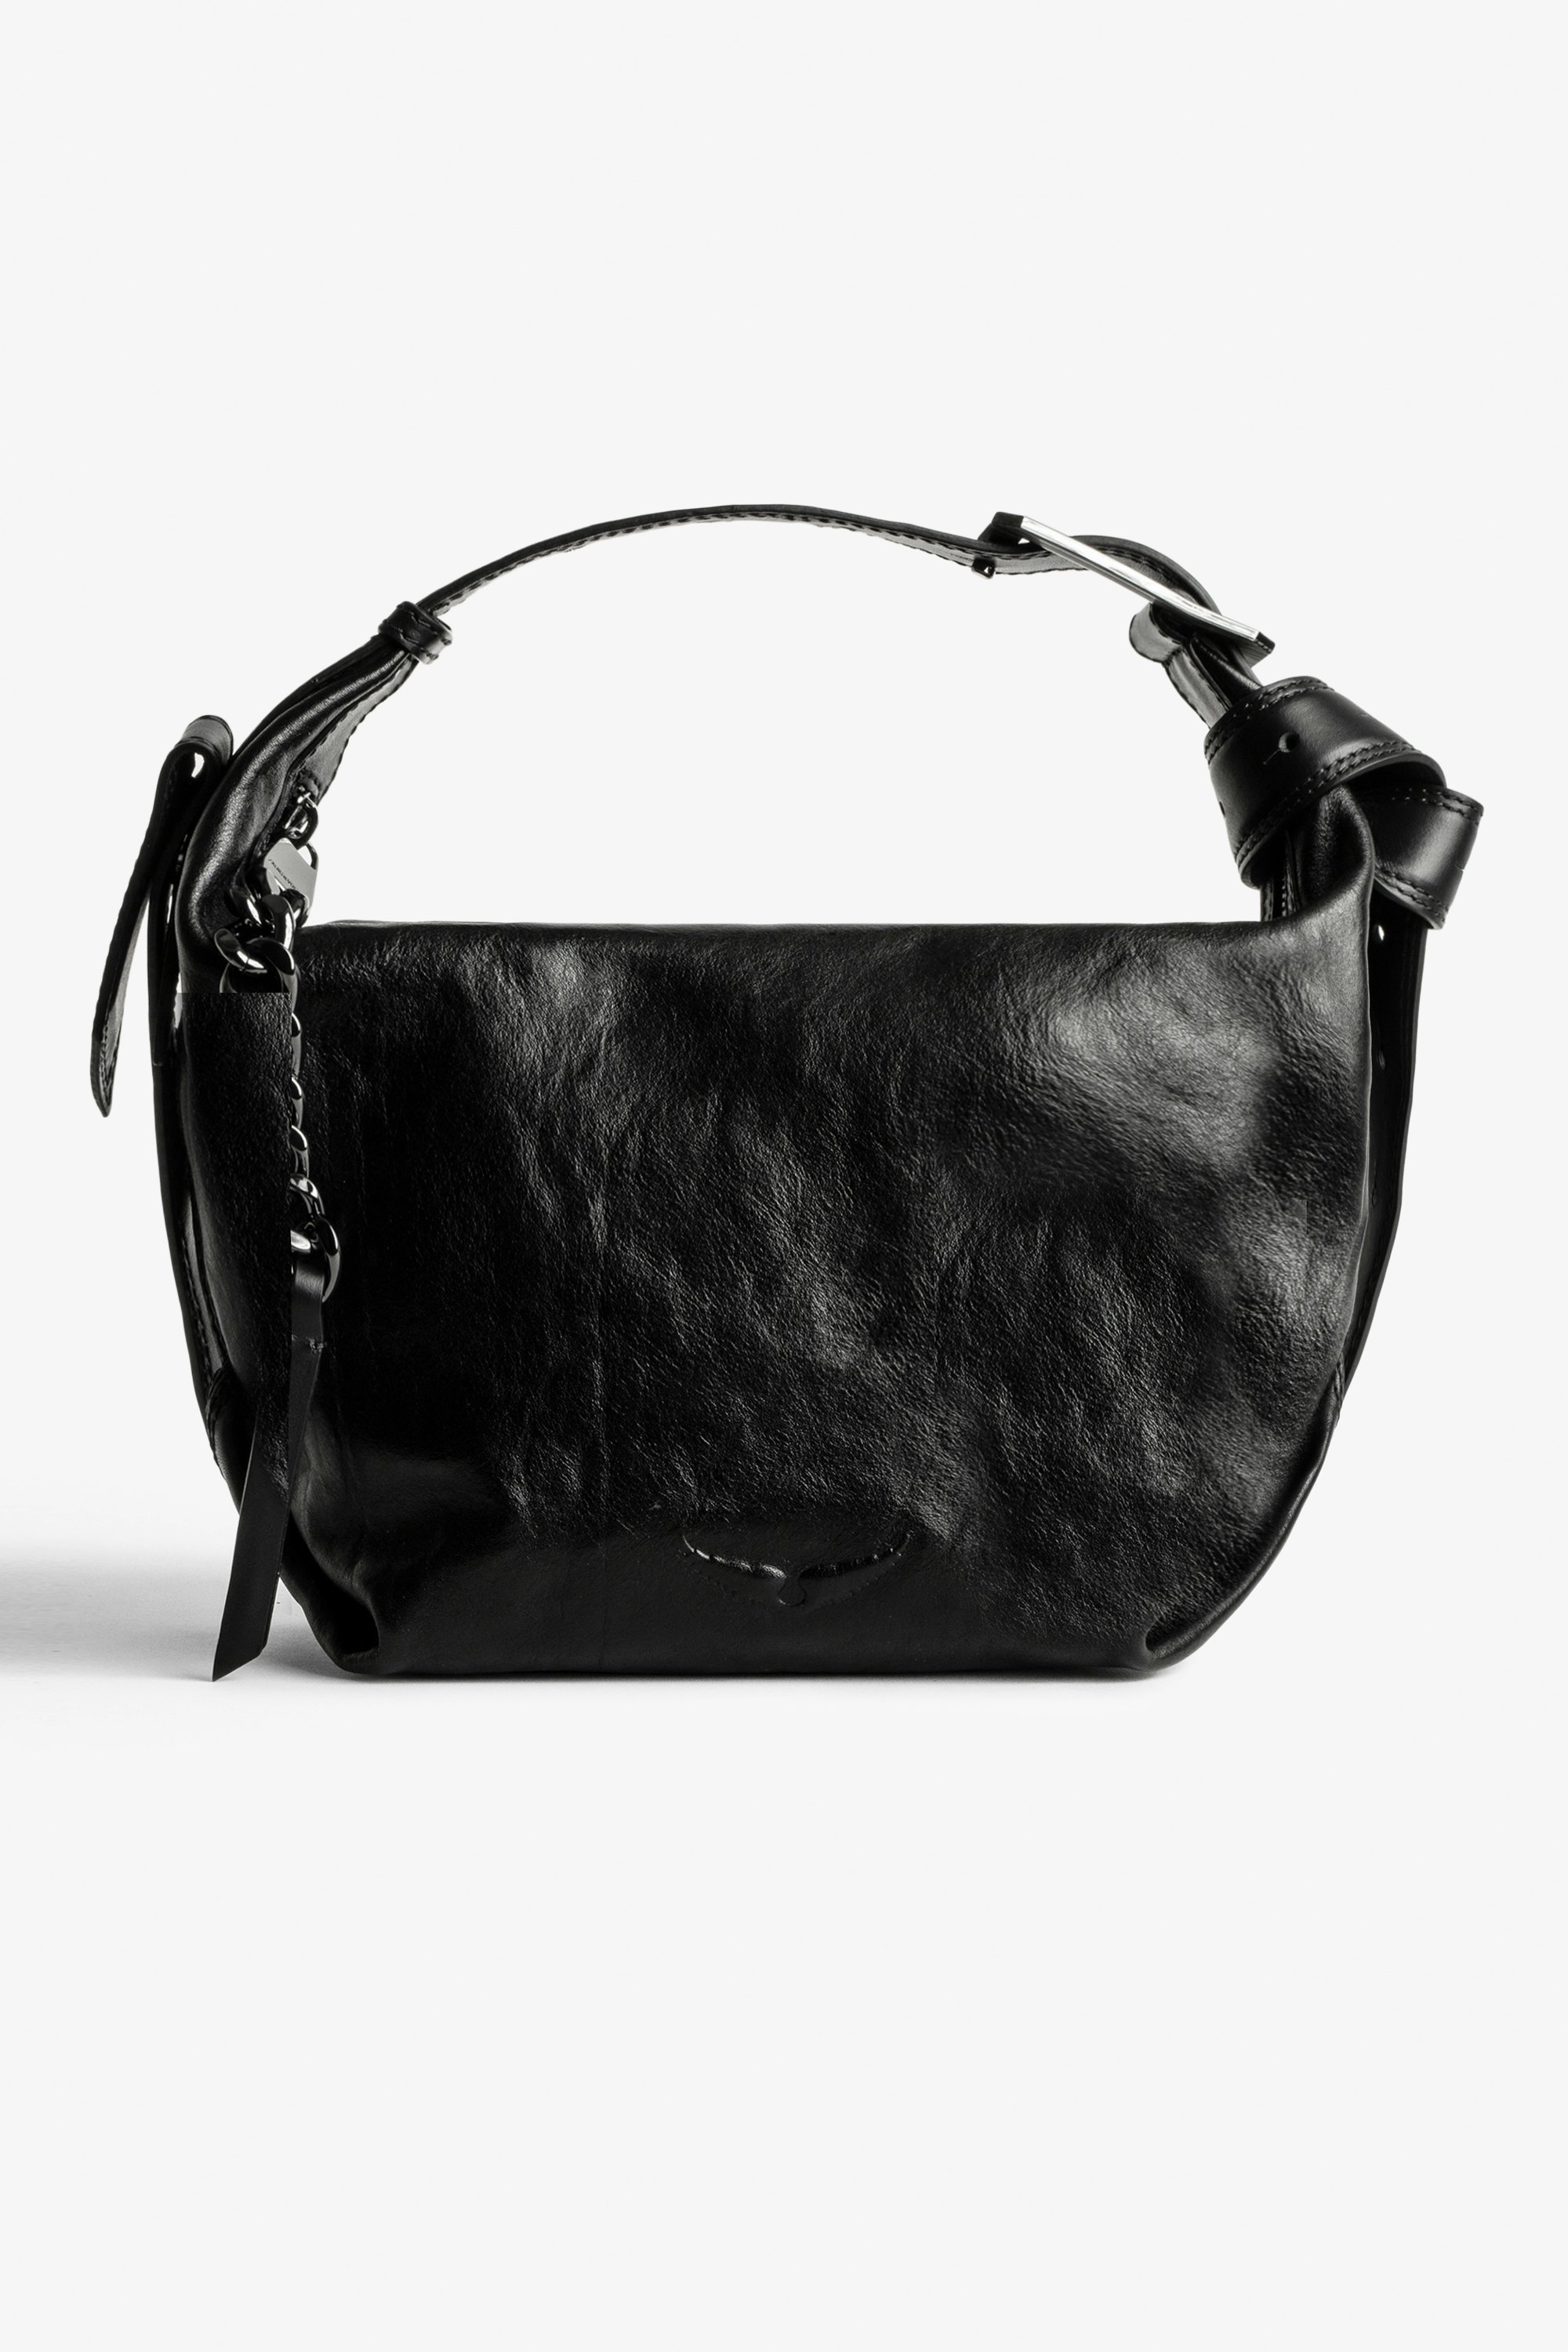 Handtasche Le Cecilia  Ikonische Damen-Handtasche Le Cecilia aus schwarzem, pflanzlich gegerbtem, italienischem Leder.